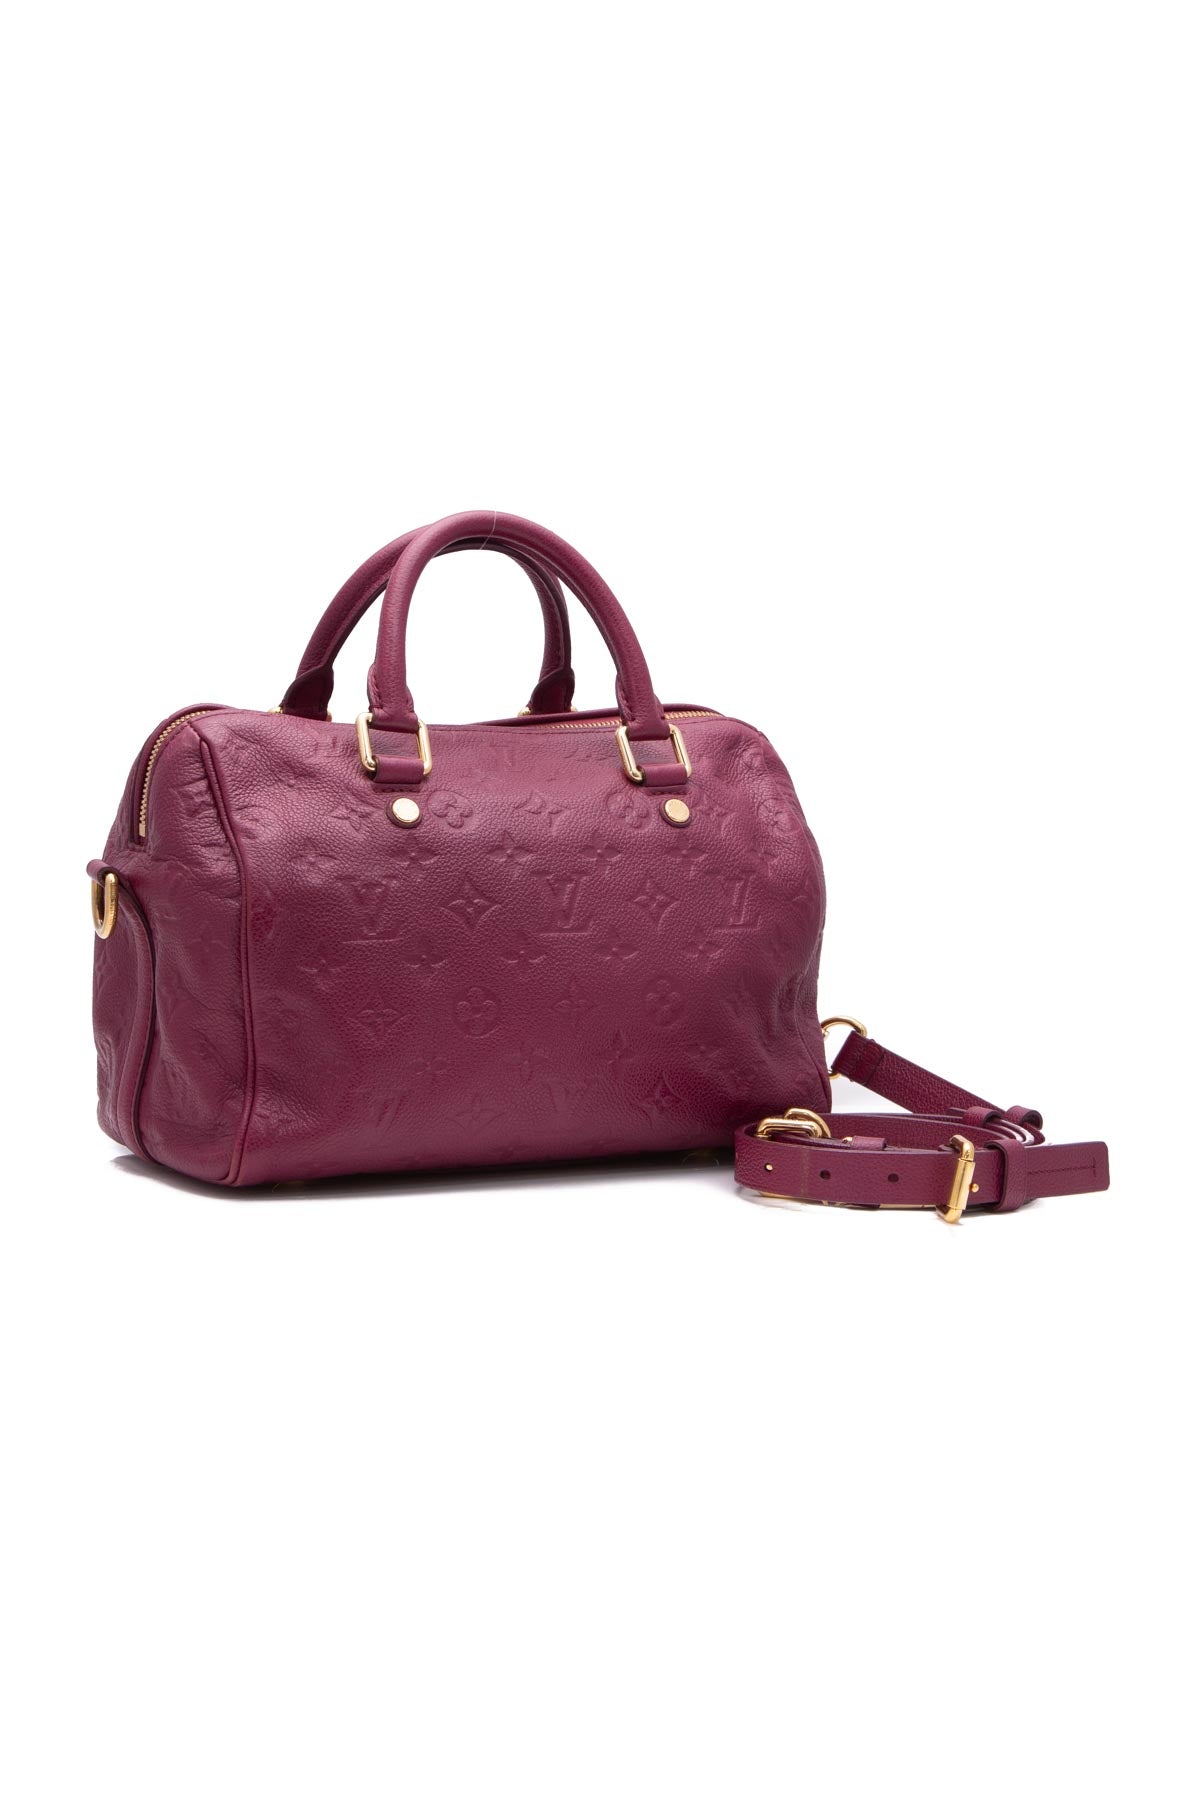 Louis Vuitton Purple Monogram Empreinte Leather Speedy Bandoulière 25  Shoulder Bag Louis Vuitton